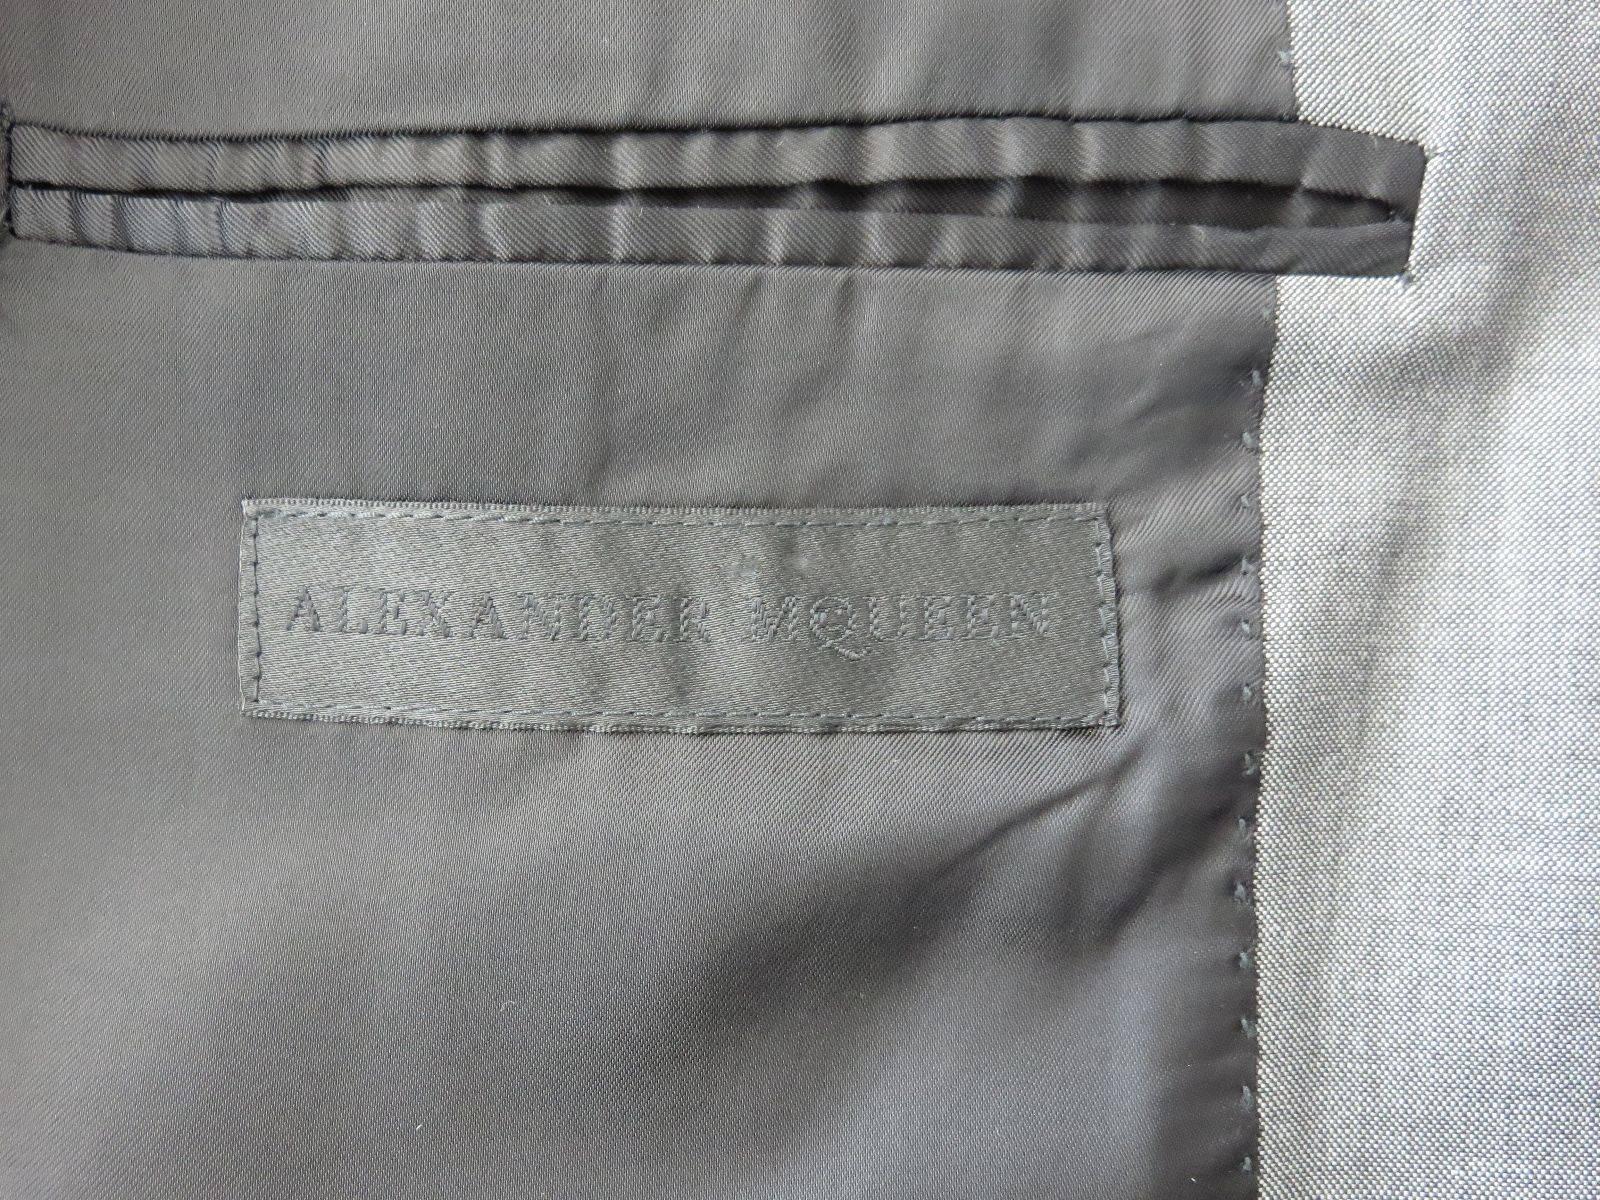 2004 ALEXANDER MCQUEEN Men's wool mohair suit  2